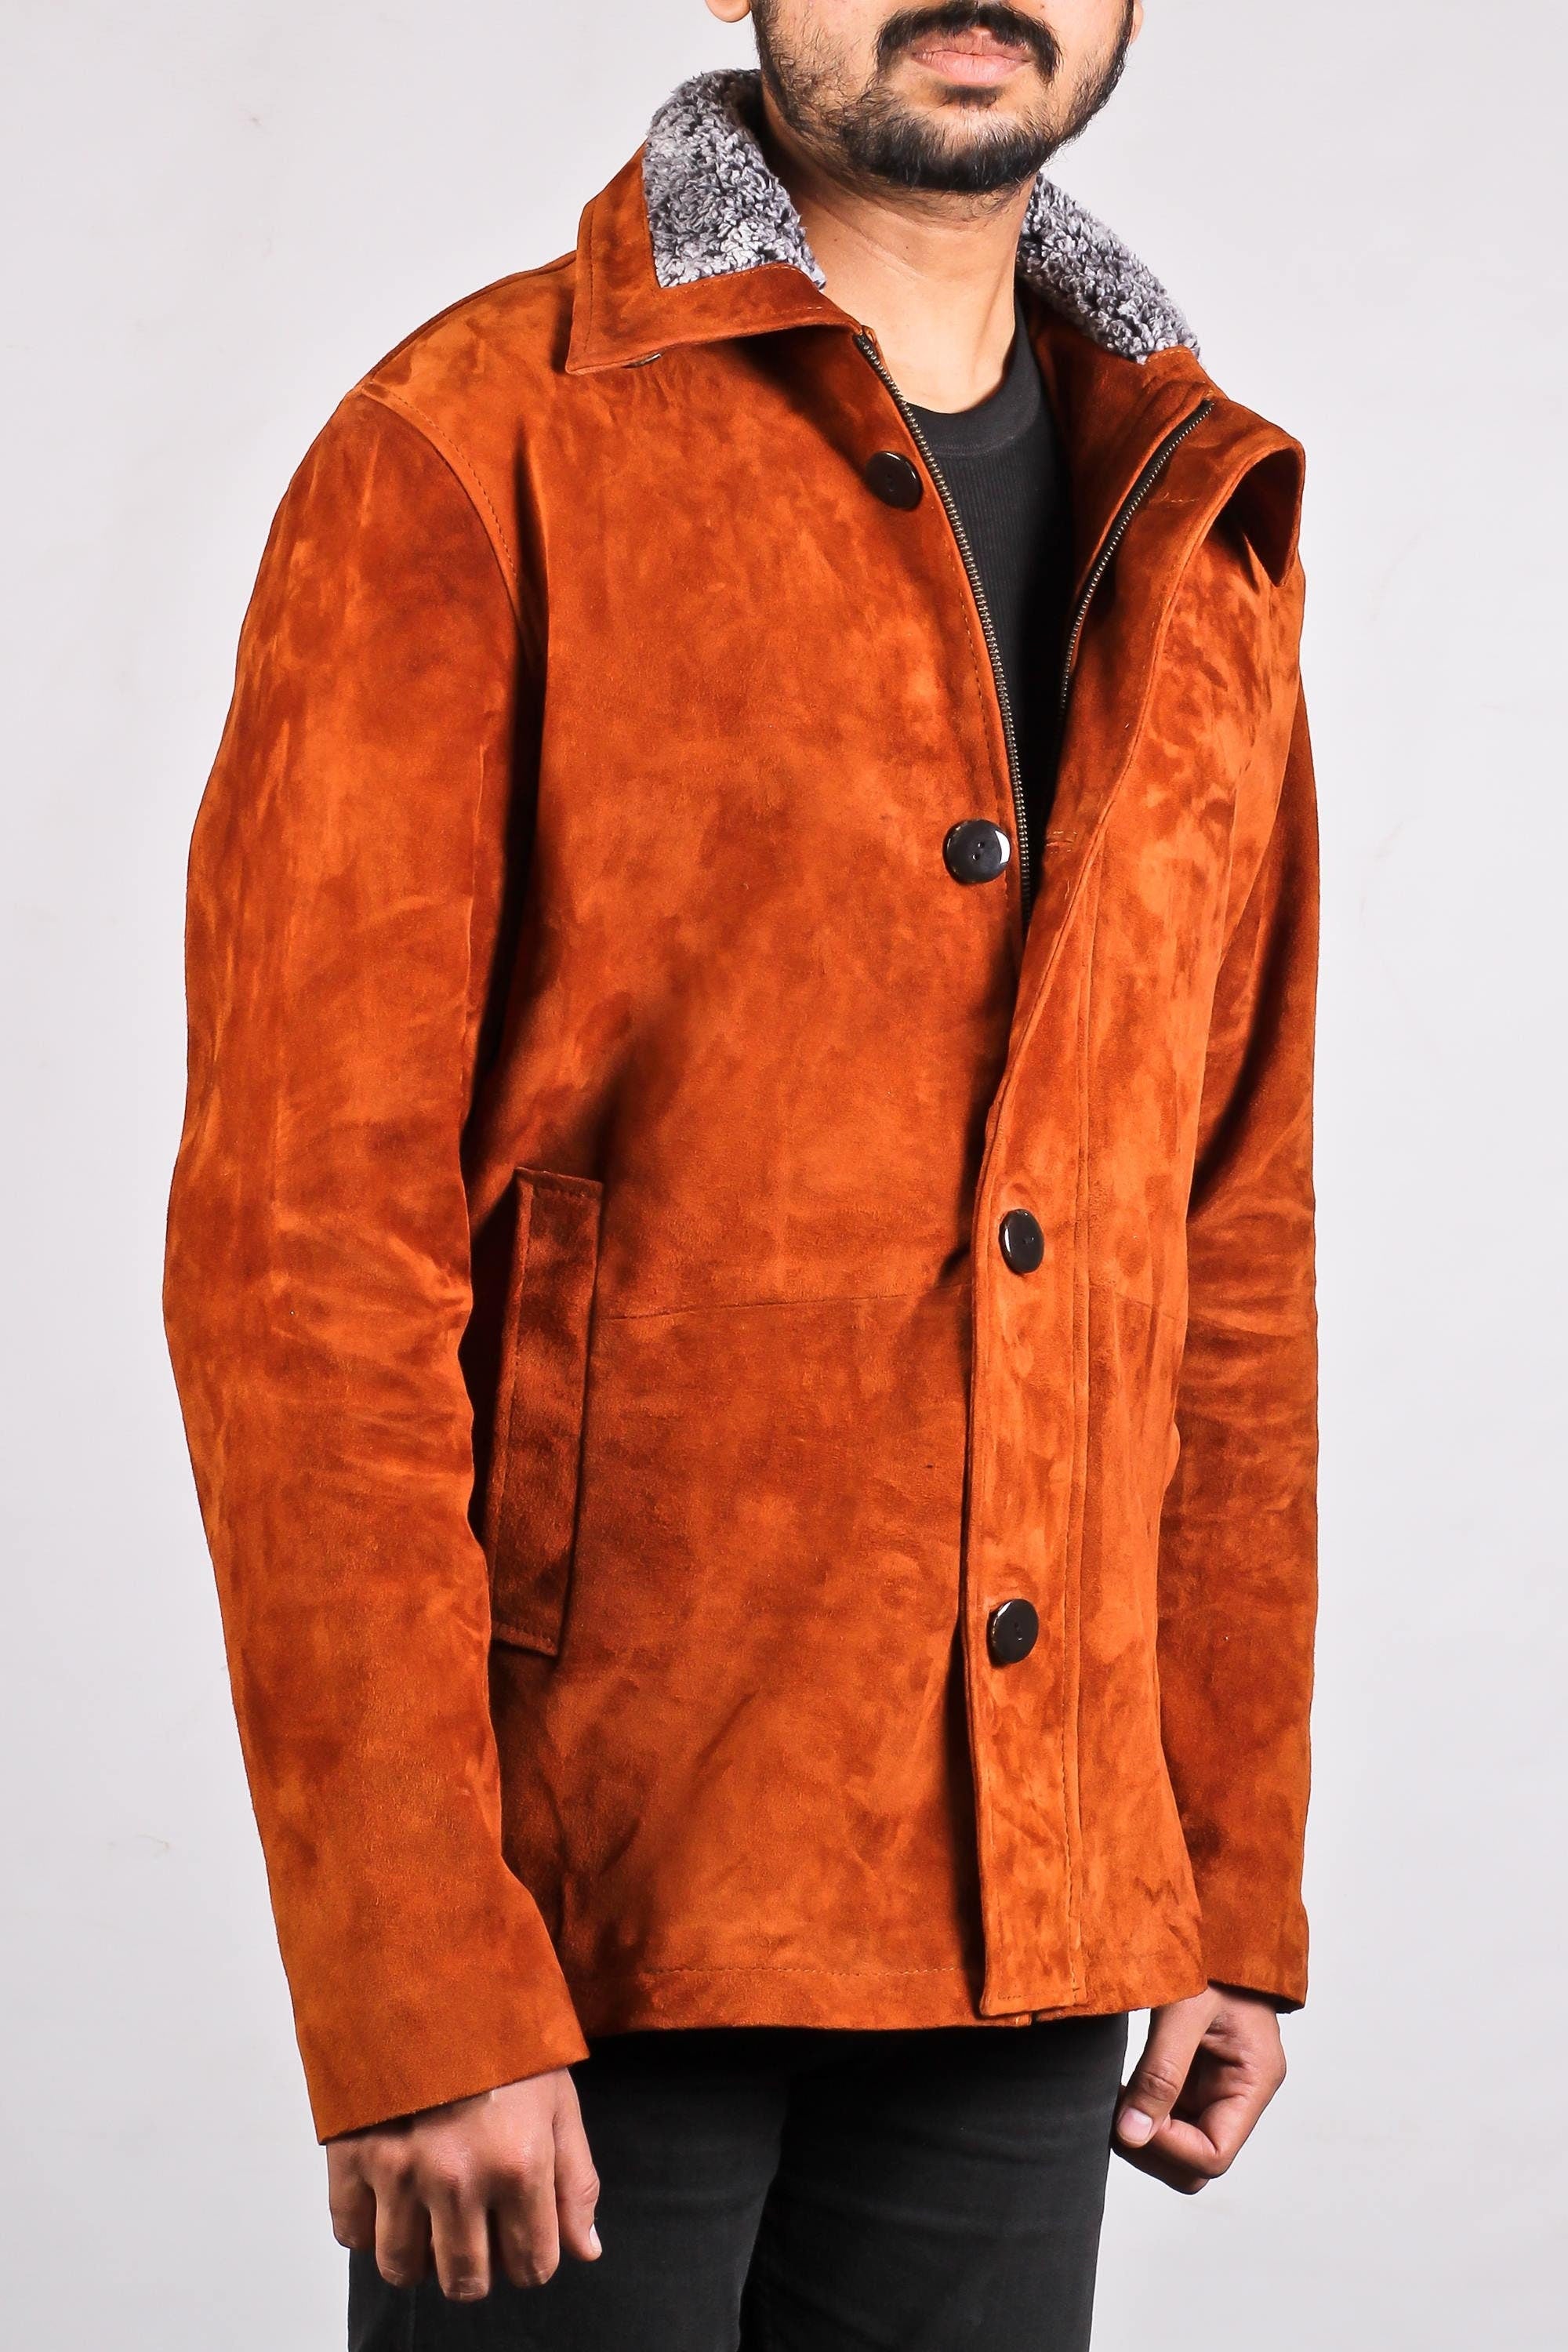 Handmade Men Suede Leather Jacket For Men